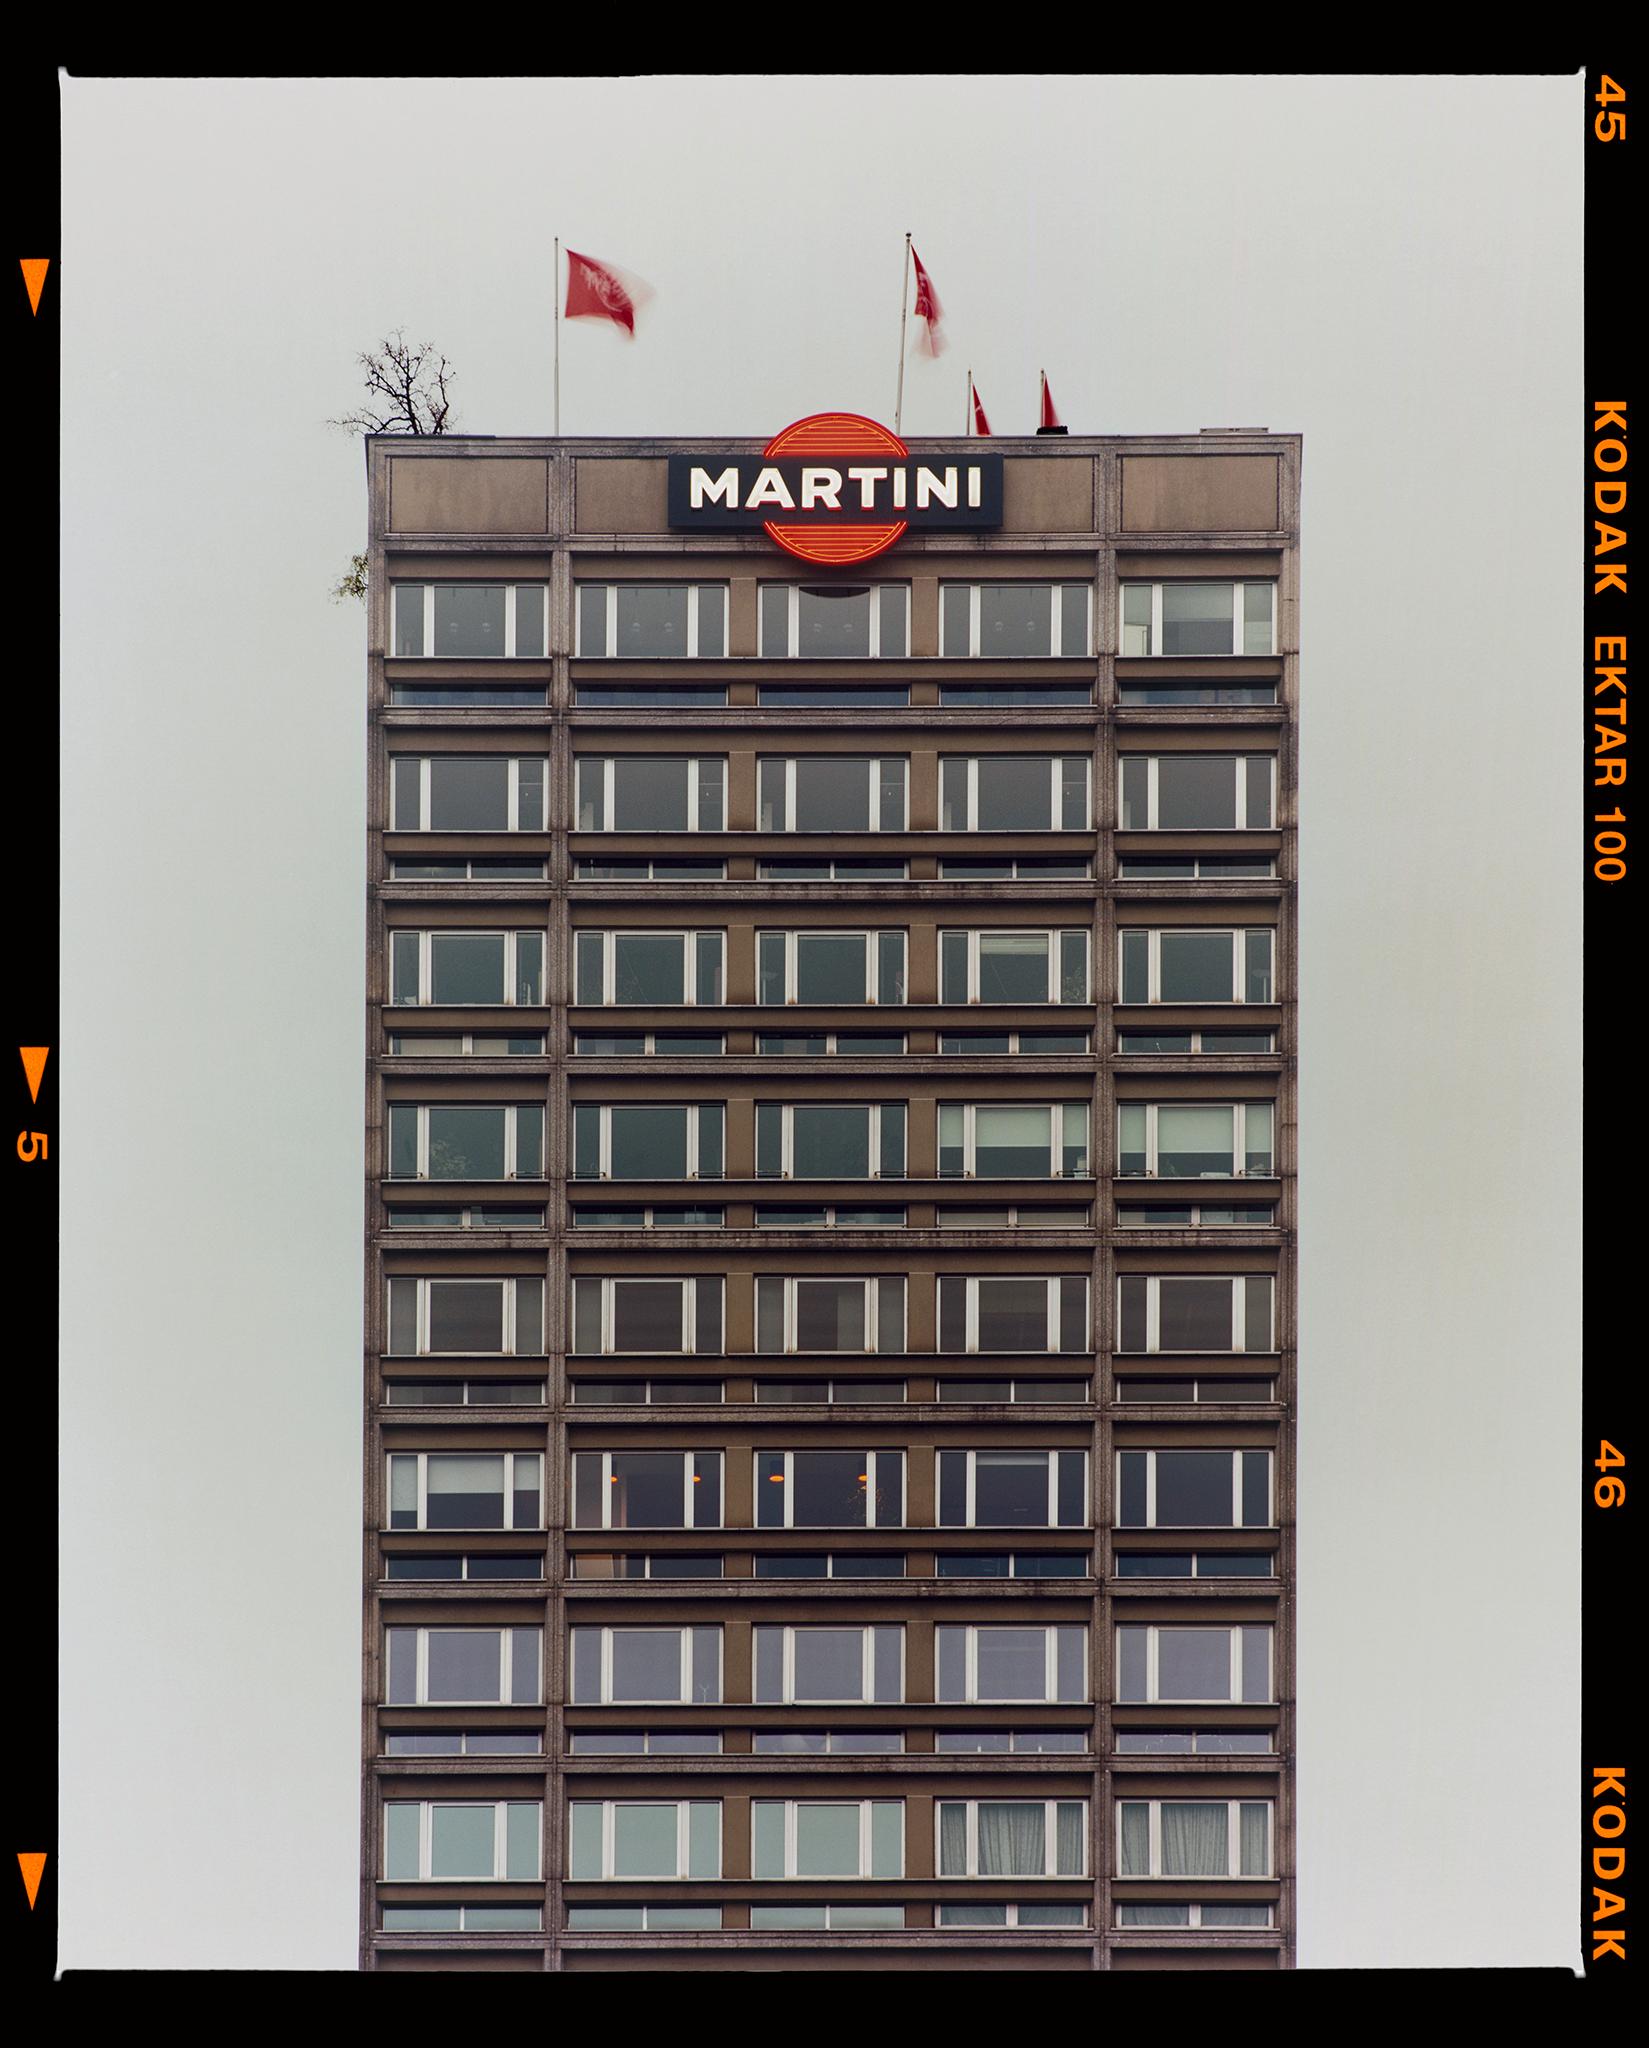 Color Photograph Richard Heeps - Martini, Milan - Photographie de rue d'architecture italienne 